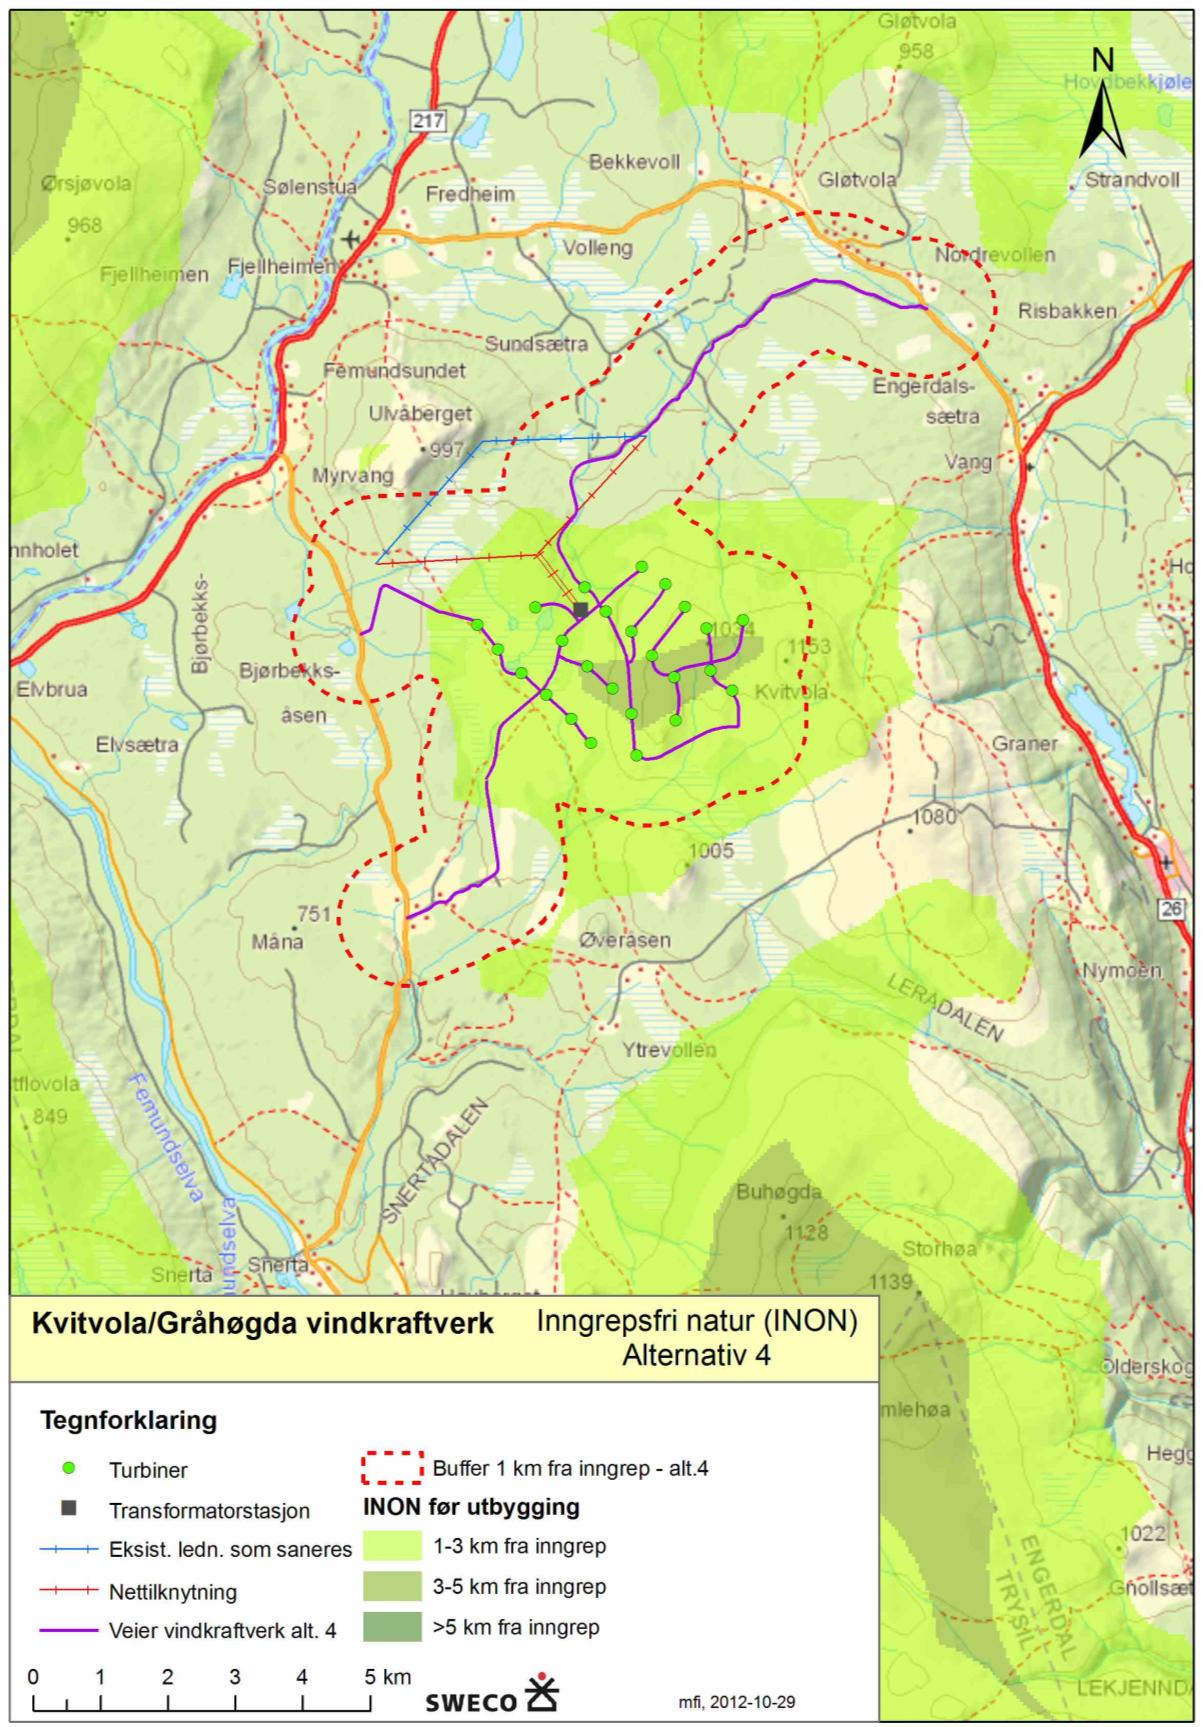 Figur 10-2 Oversikt over inngrepsfri natur (INON) i området som blir berørt av Kvitvola/Gråhøgda